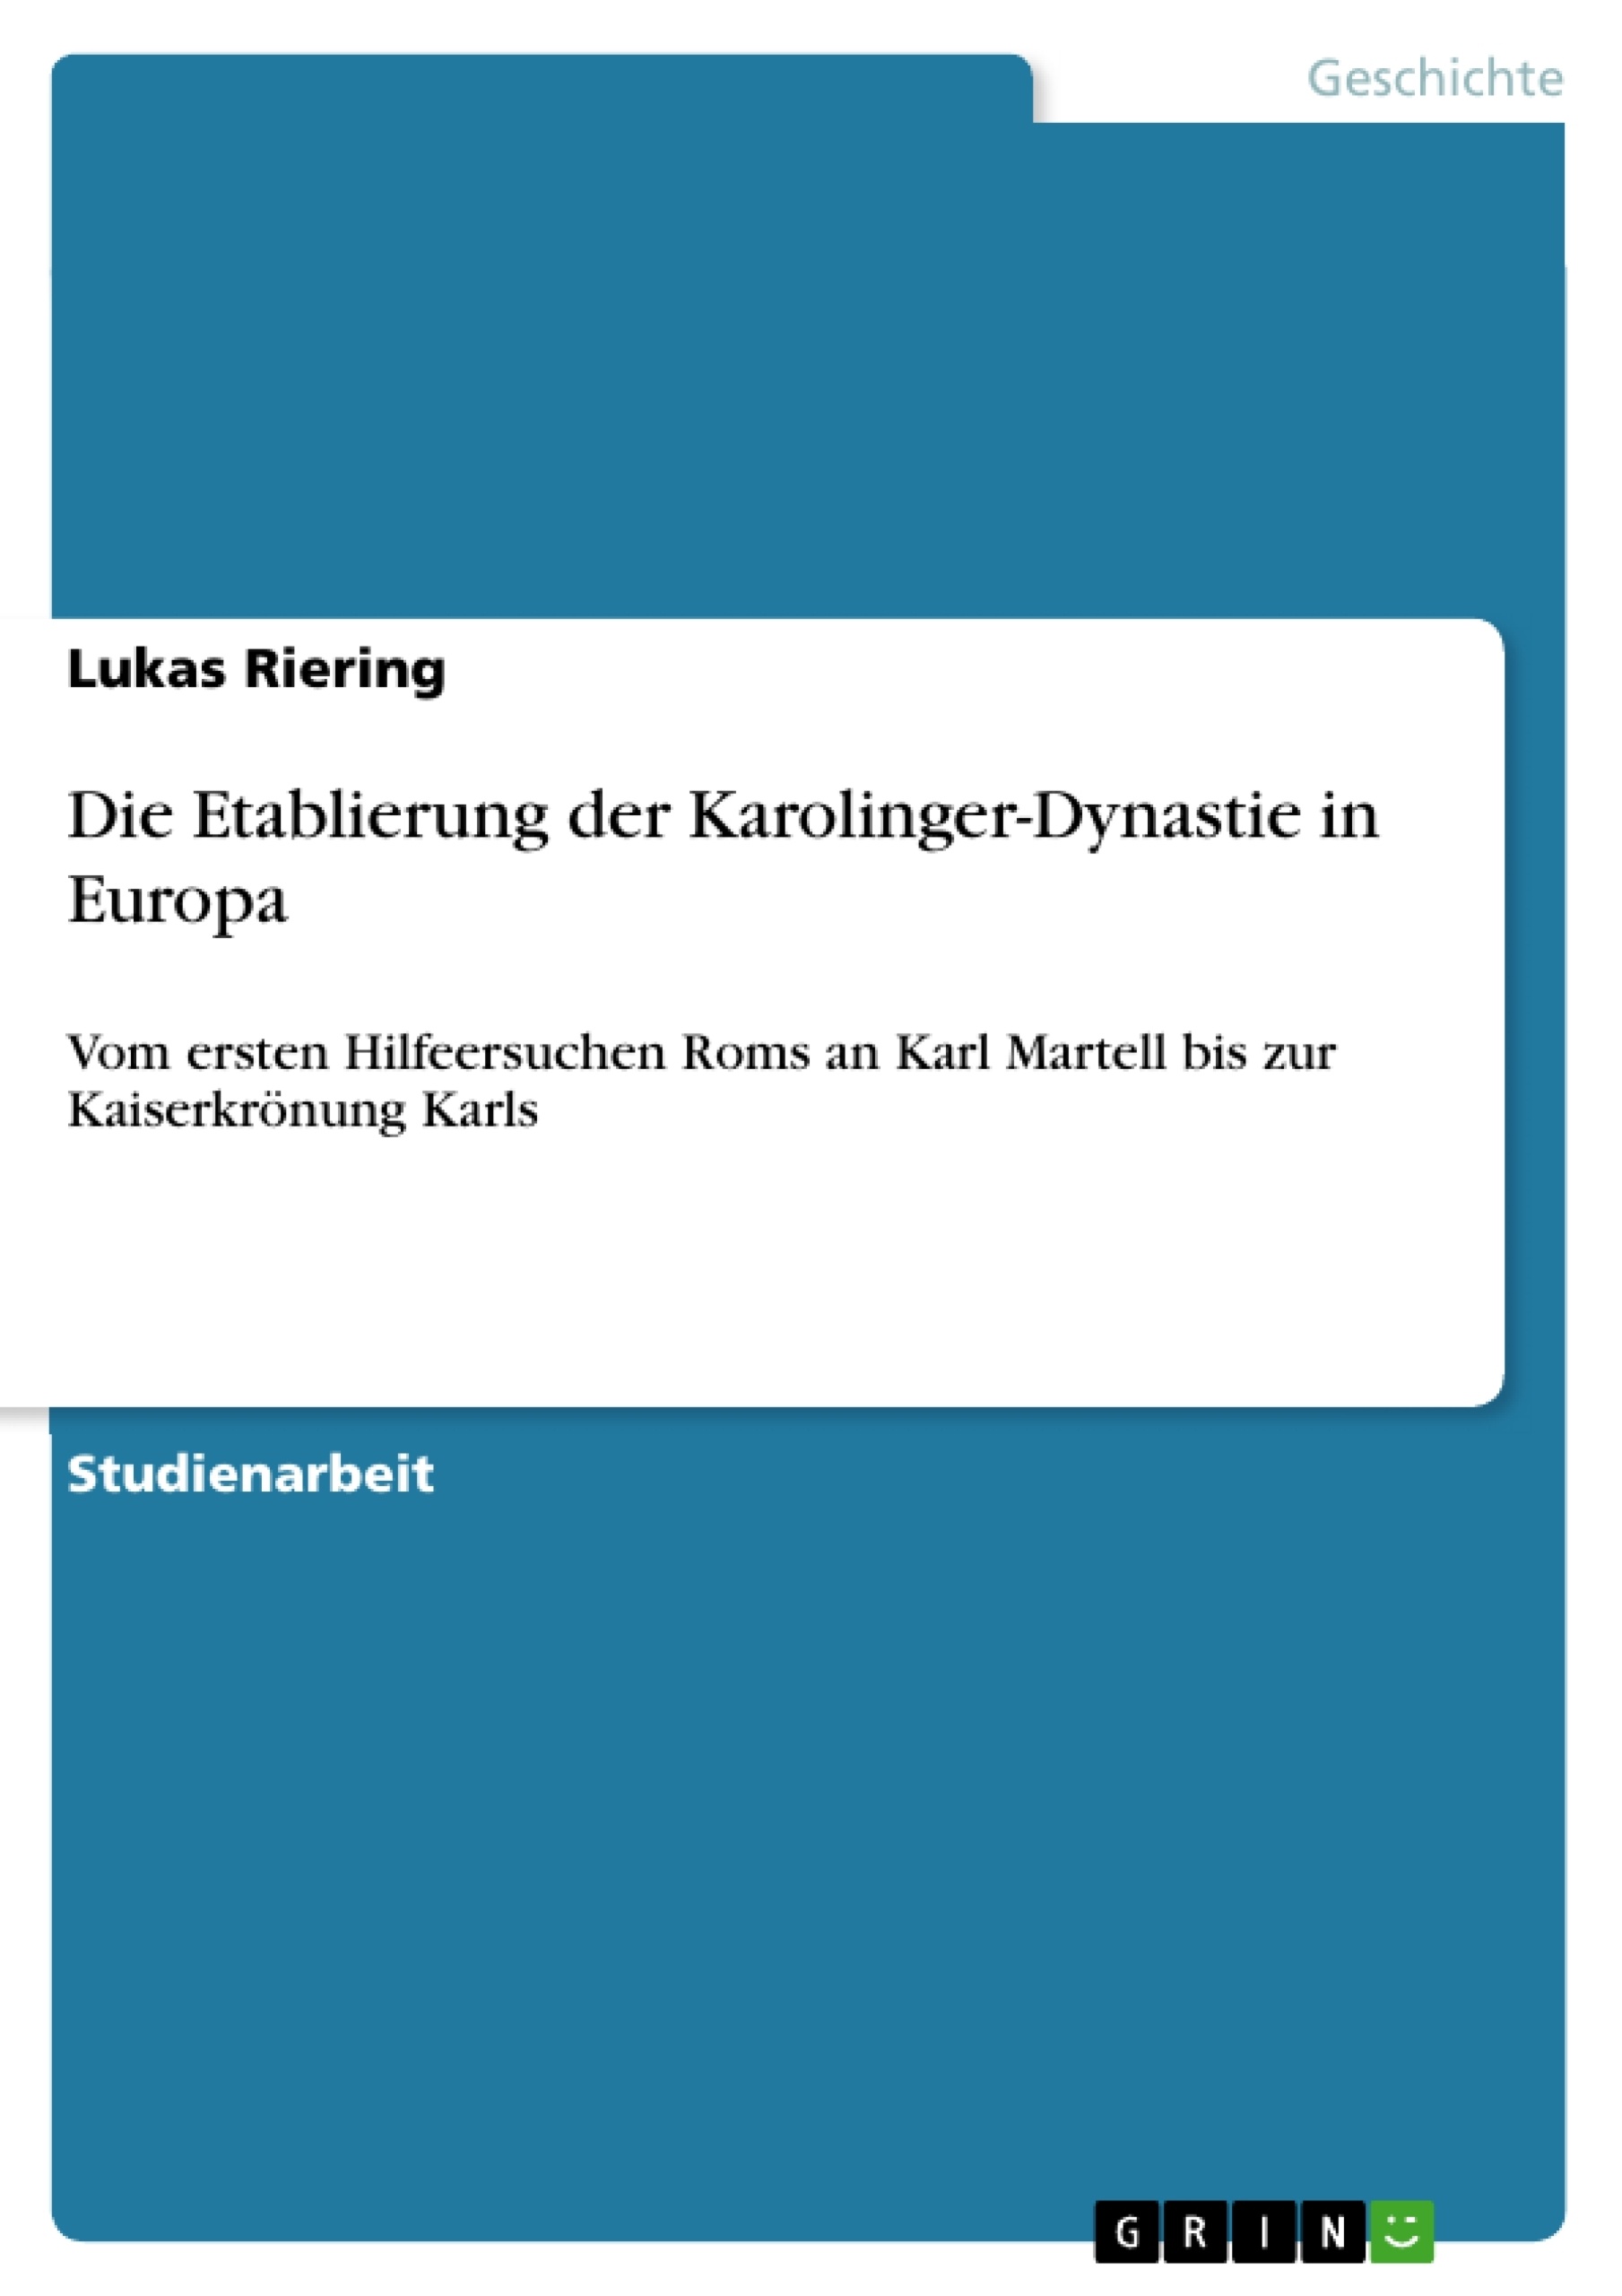 Title: Die Etablierung der Karolinger-Dynastie in Europa